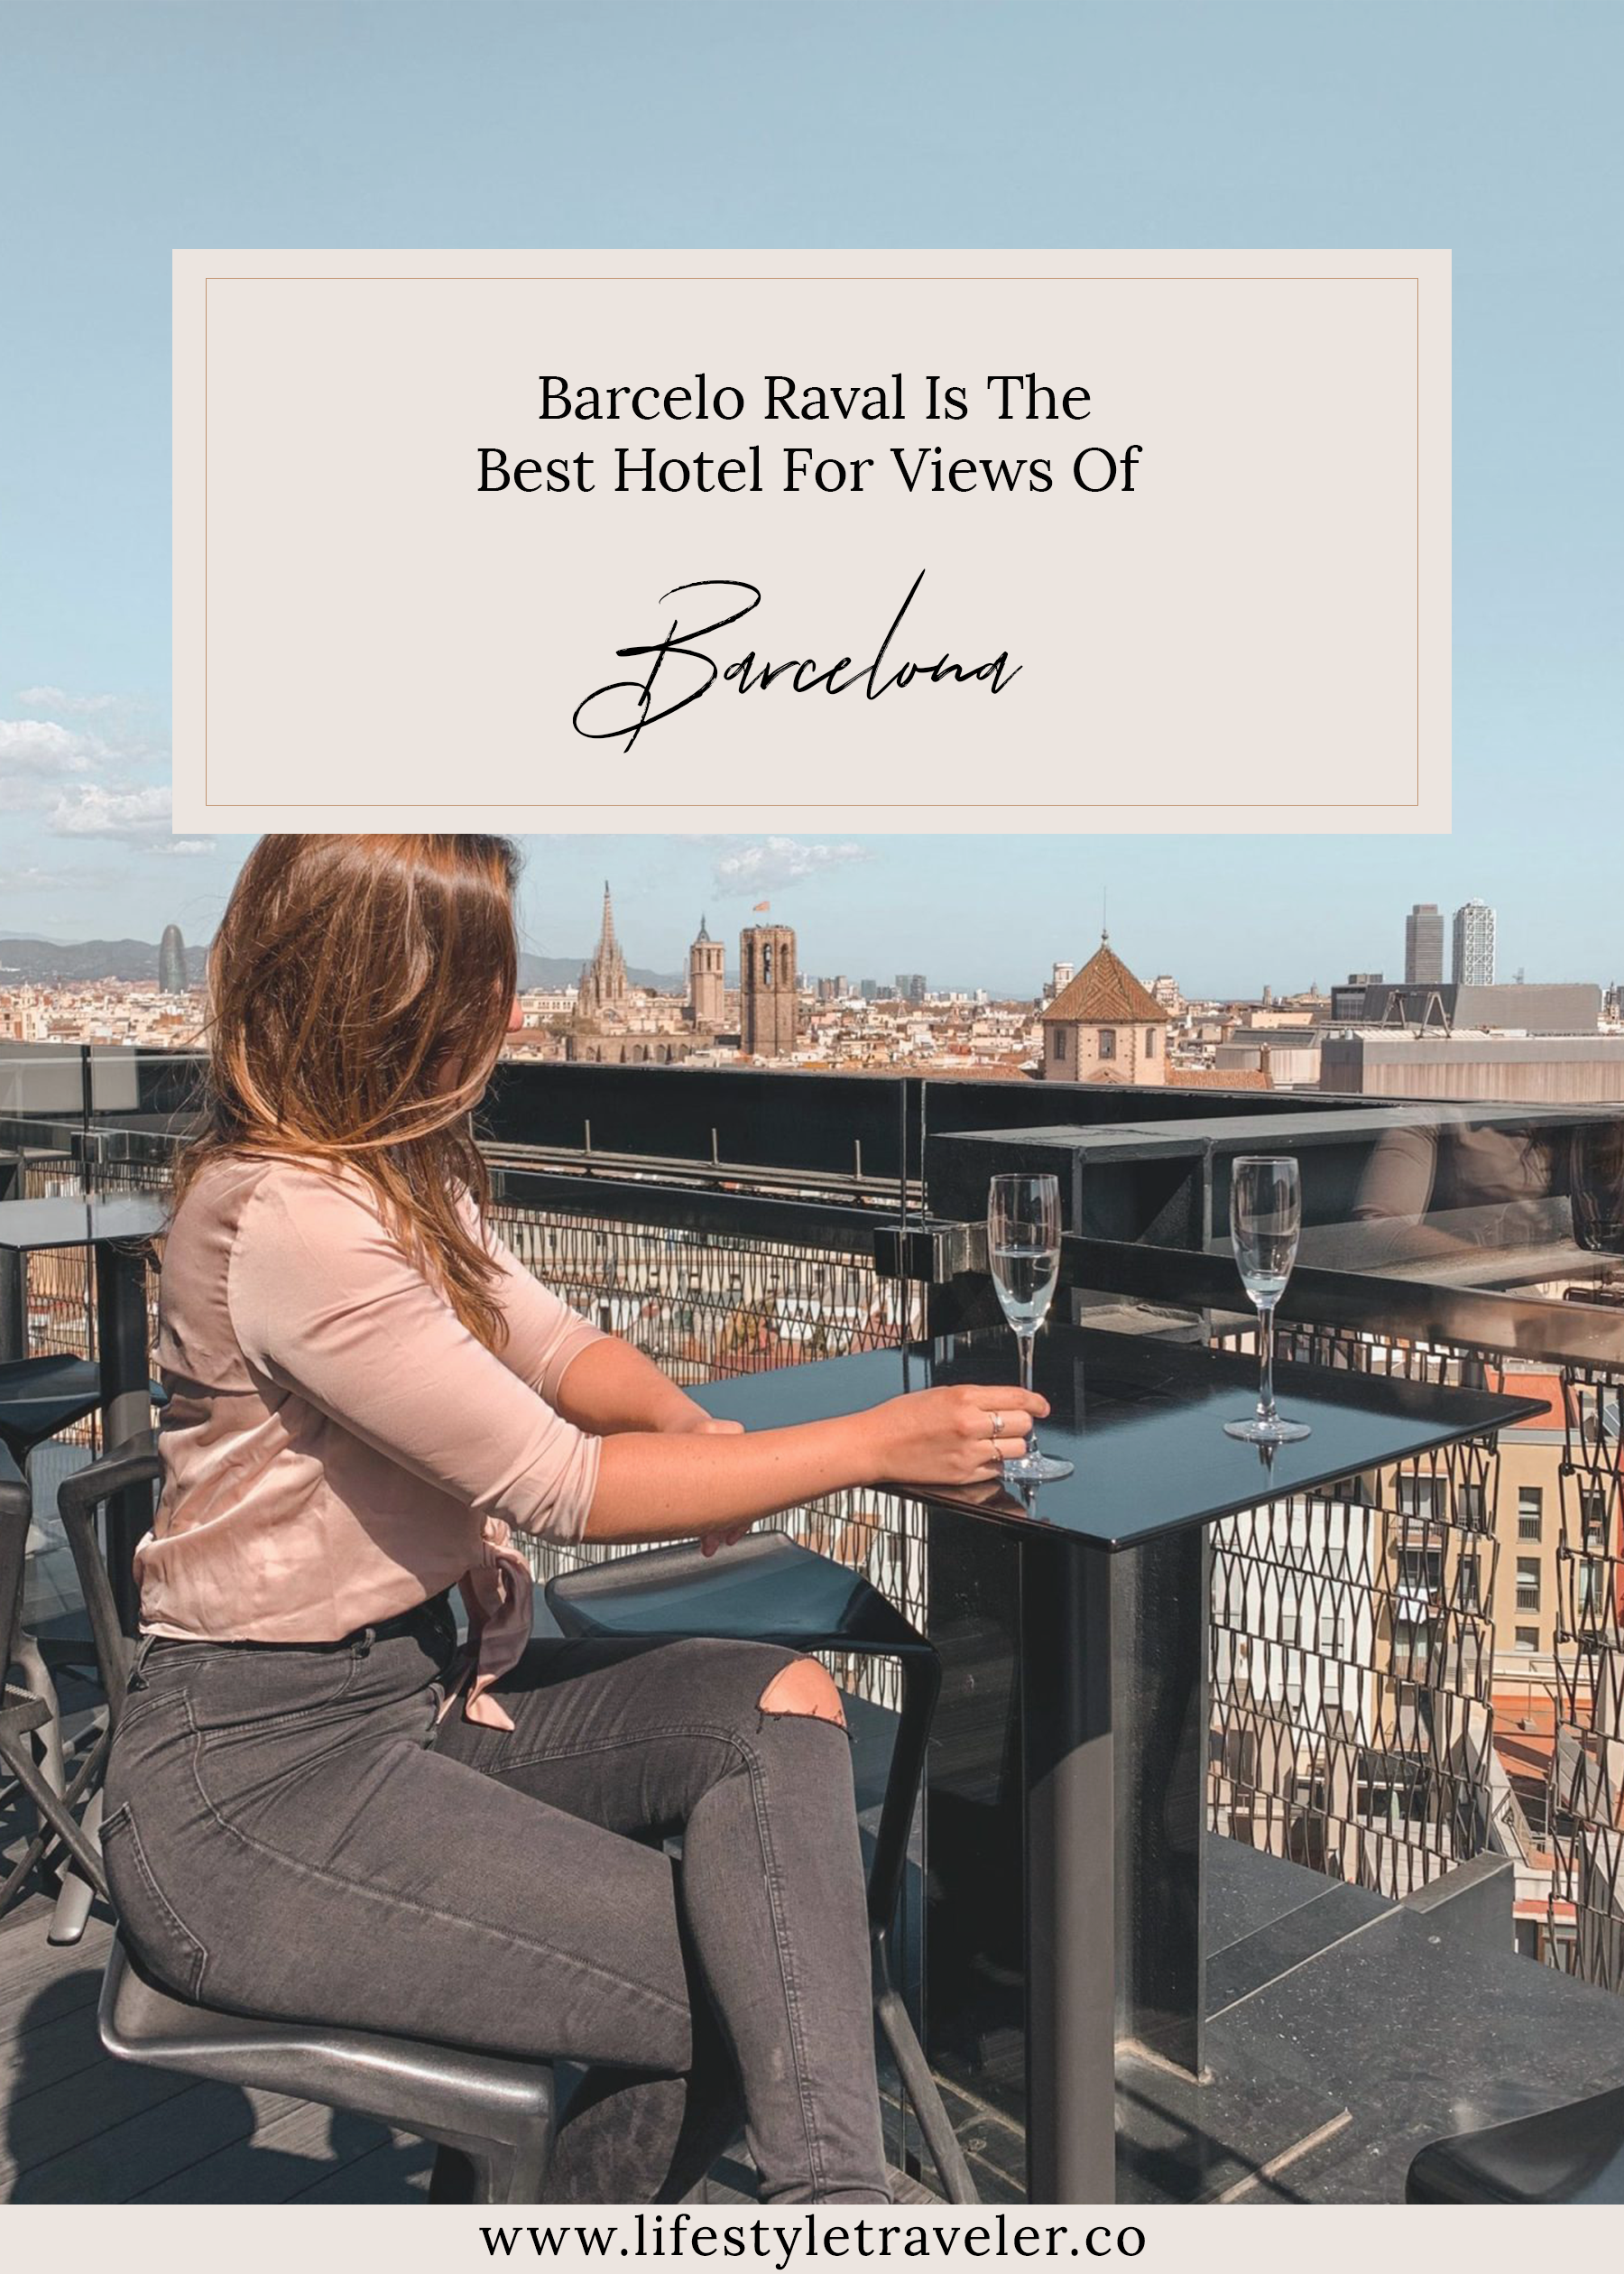 Hotel Barcelo Raval in Barcelona | www.lifestyletraveler.co | IG: @lifestyletraveler.co